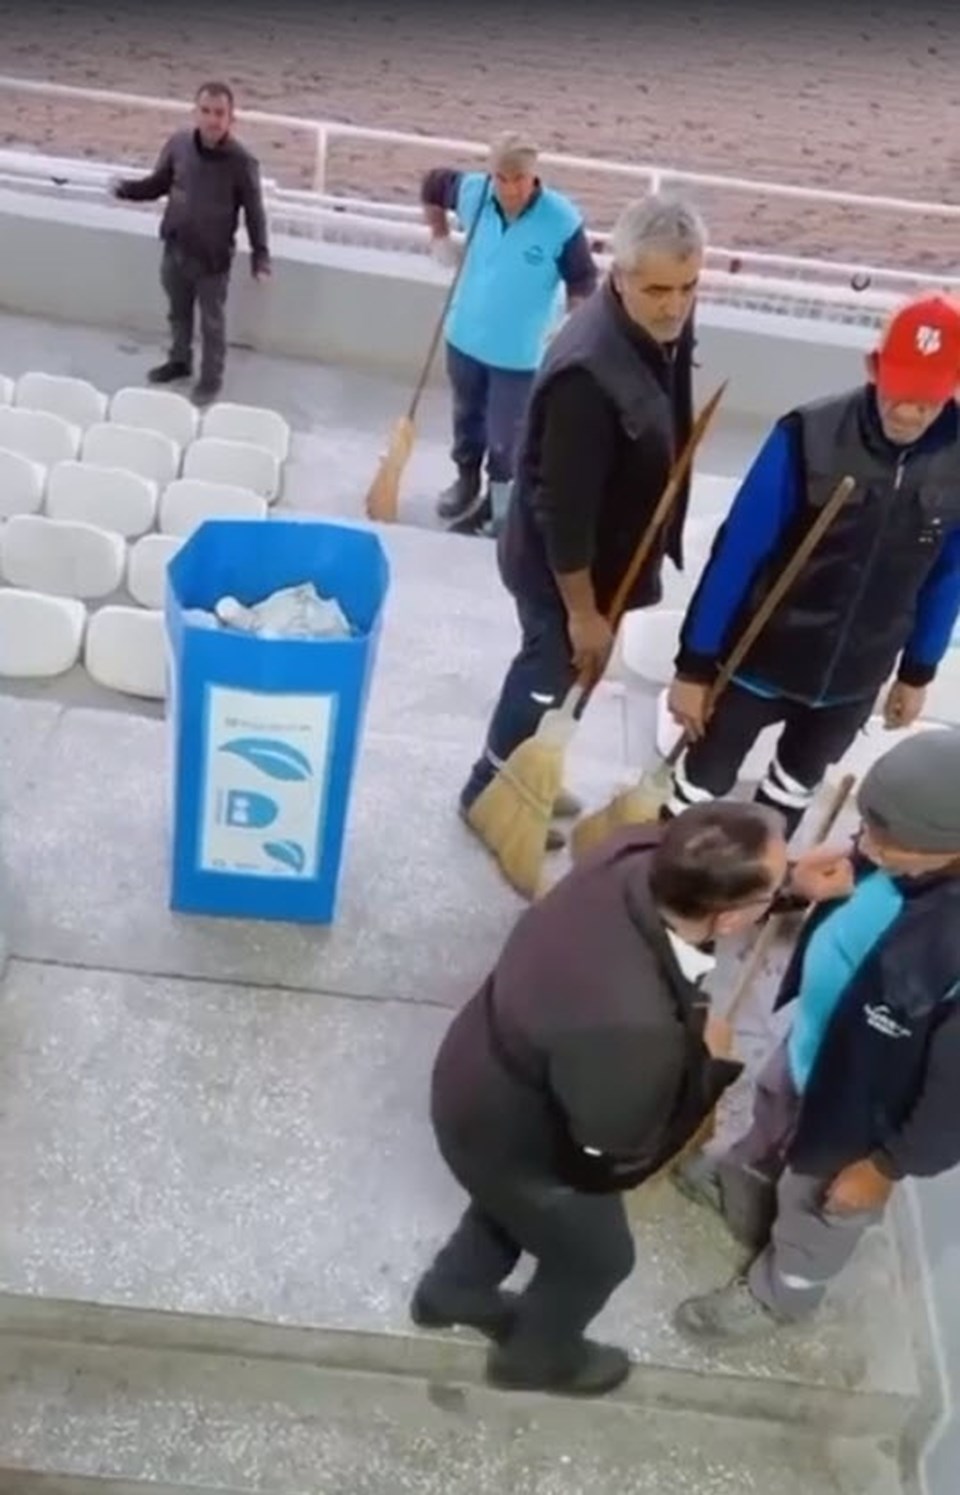 İzmir'de temizlik görevlisine tokatlı saldırı - 1